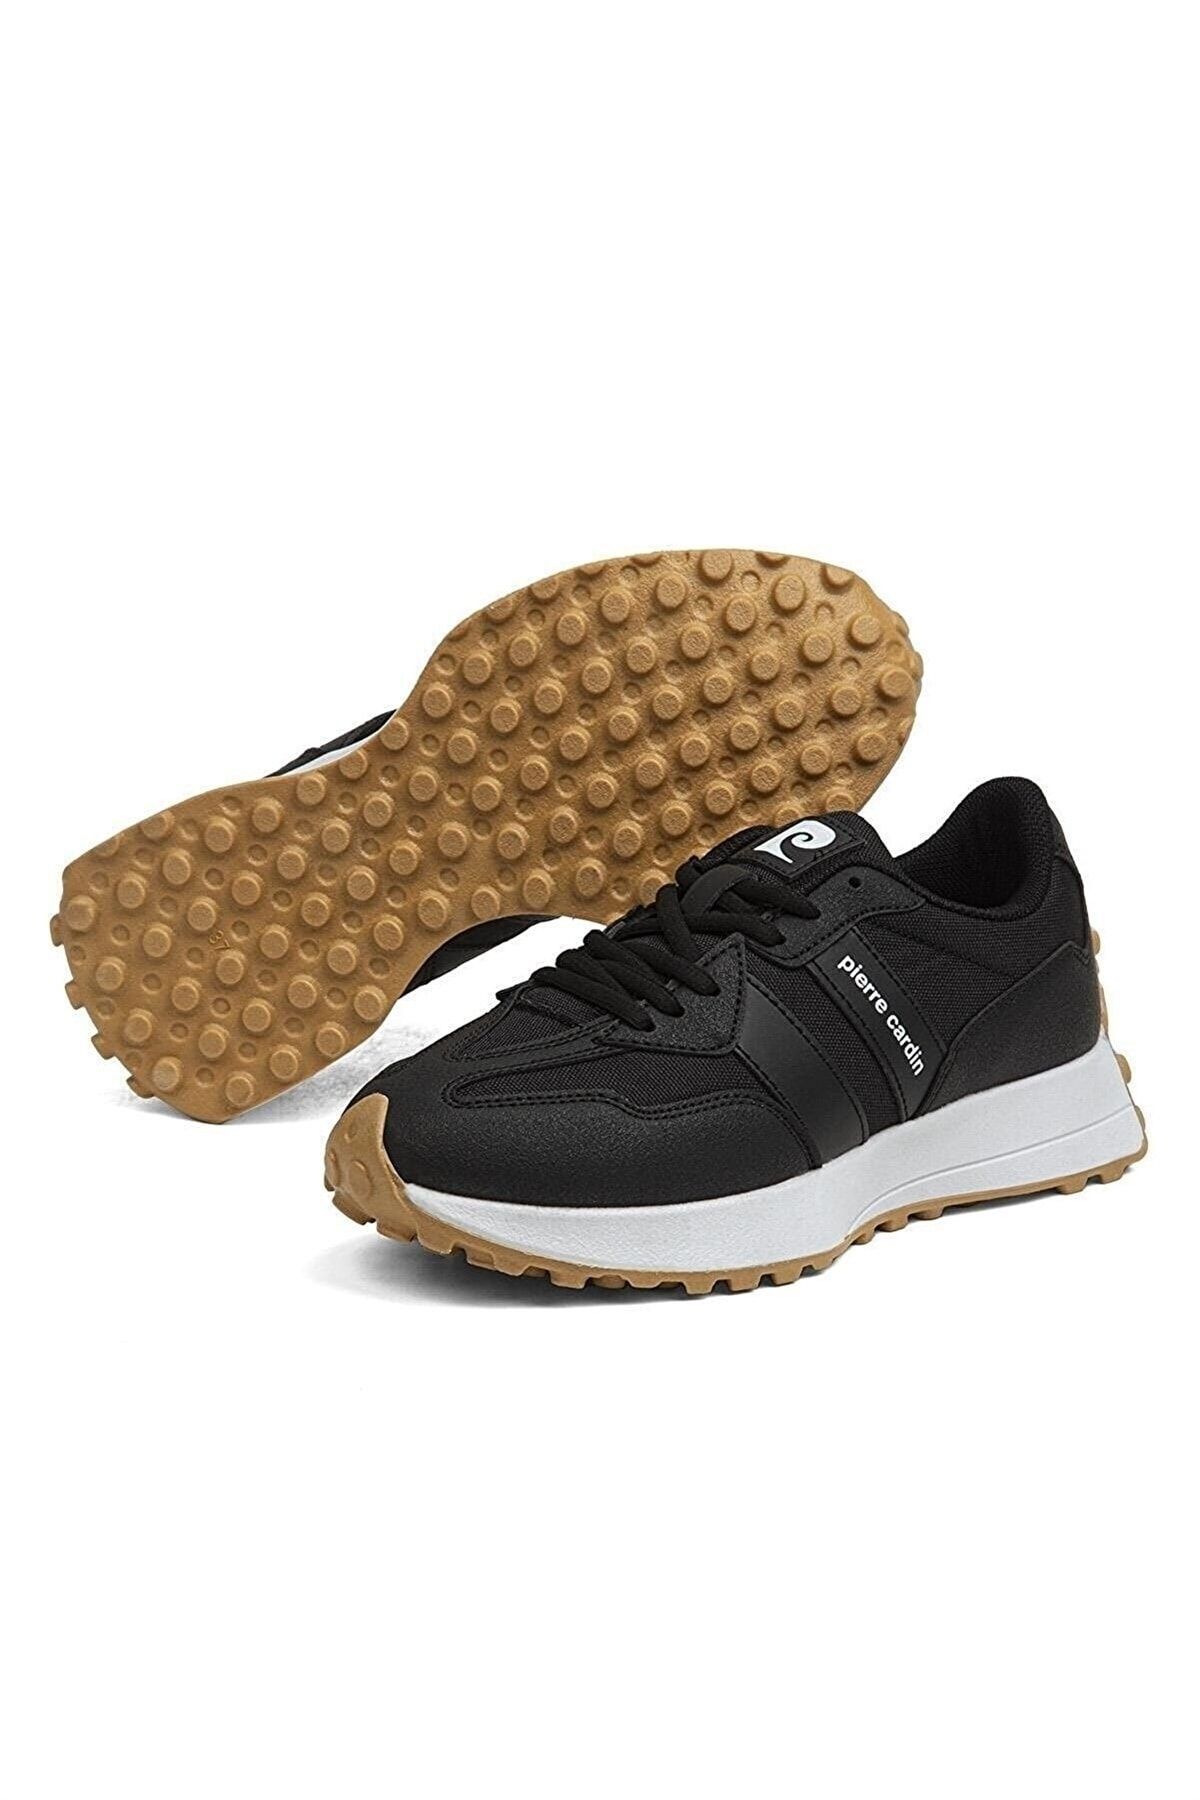 Pierre Cardin ® Kadın Siyah Günlük Sneaker Spor Ayakkabı 31004